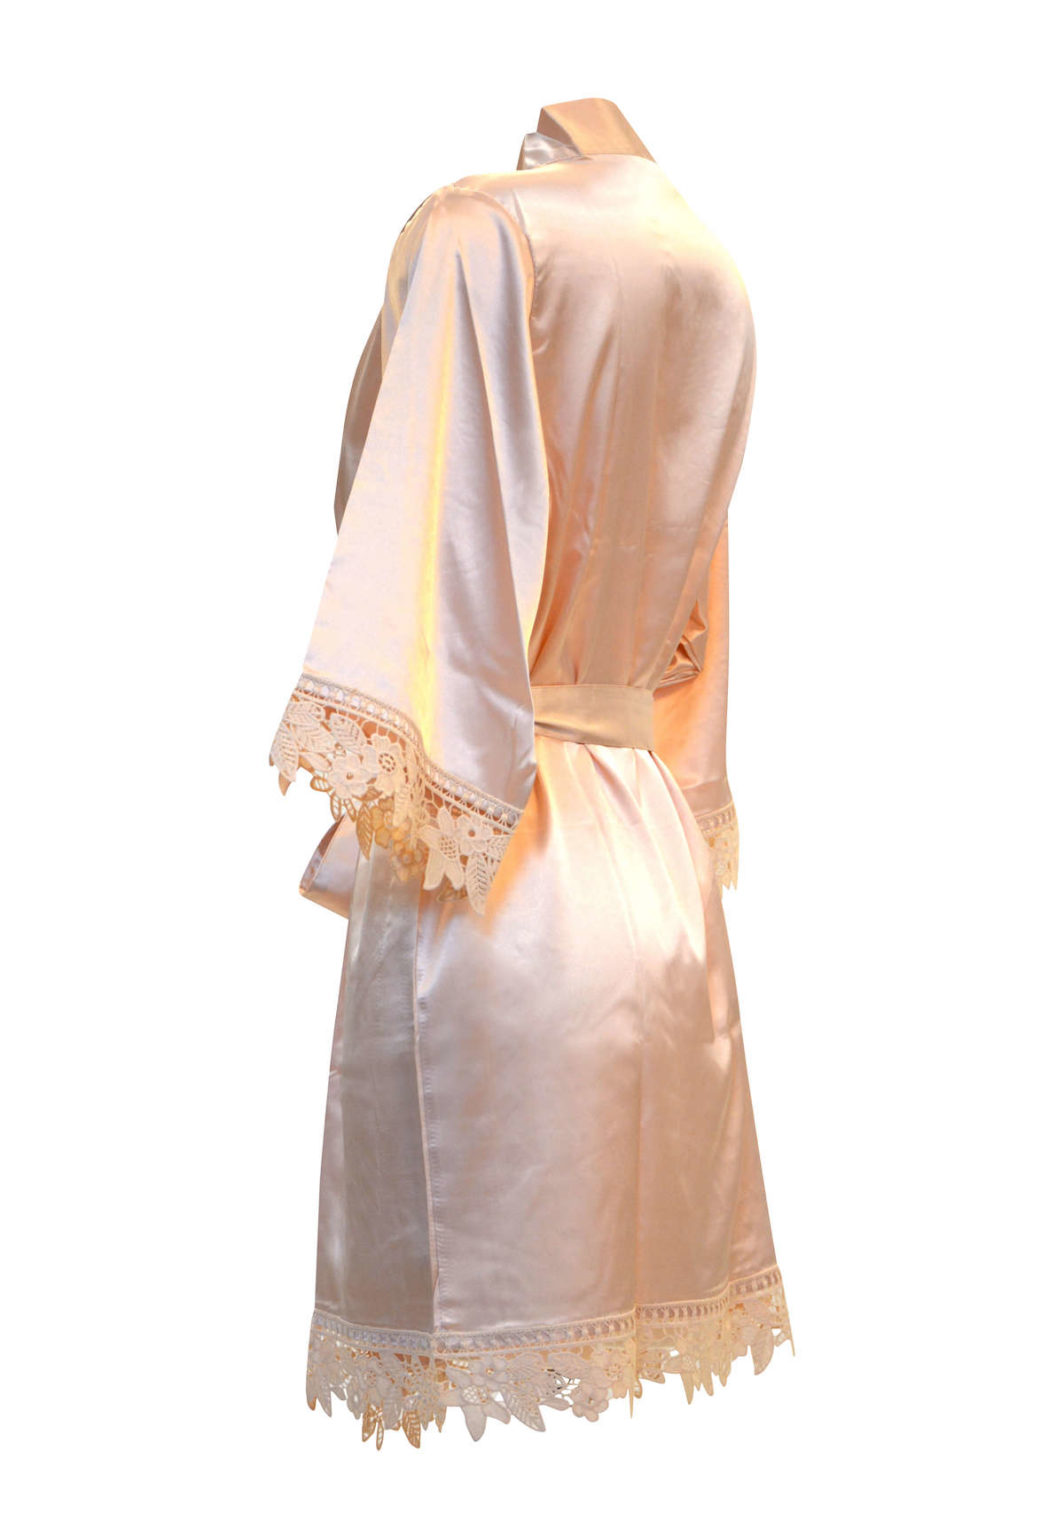 Silkeslen Kimono Morgonrock för brud och bröllop till möhippa och honeymoon - TopLady